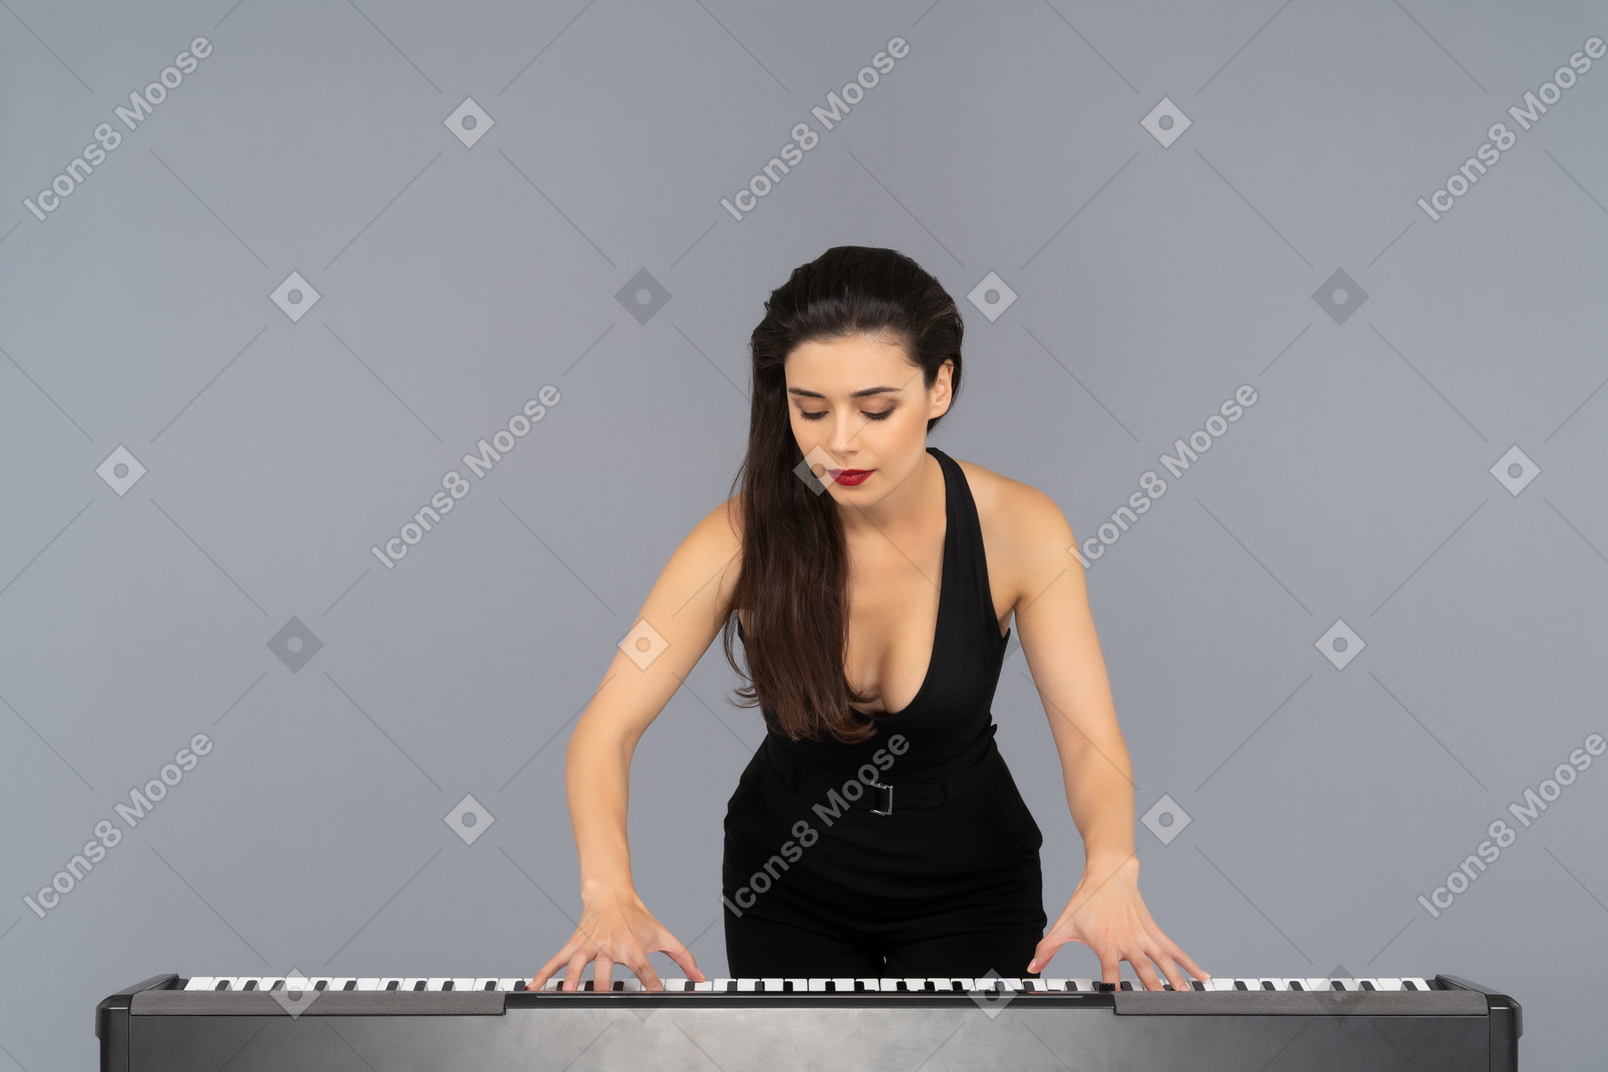 그녀의 연주에 집중되는 젊은 여성 피아니스트